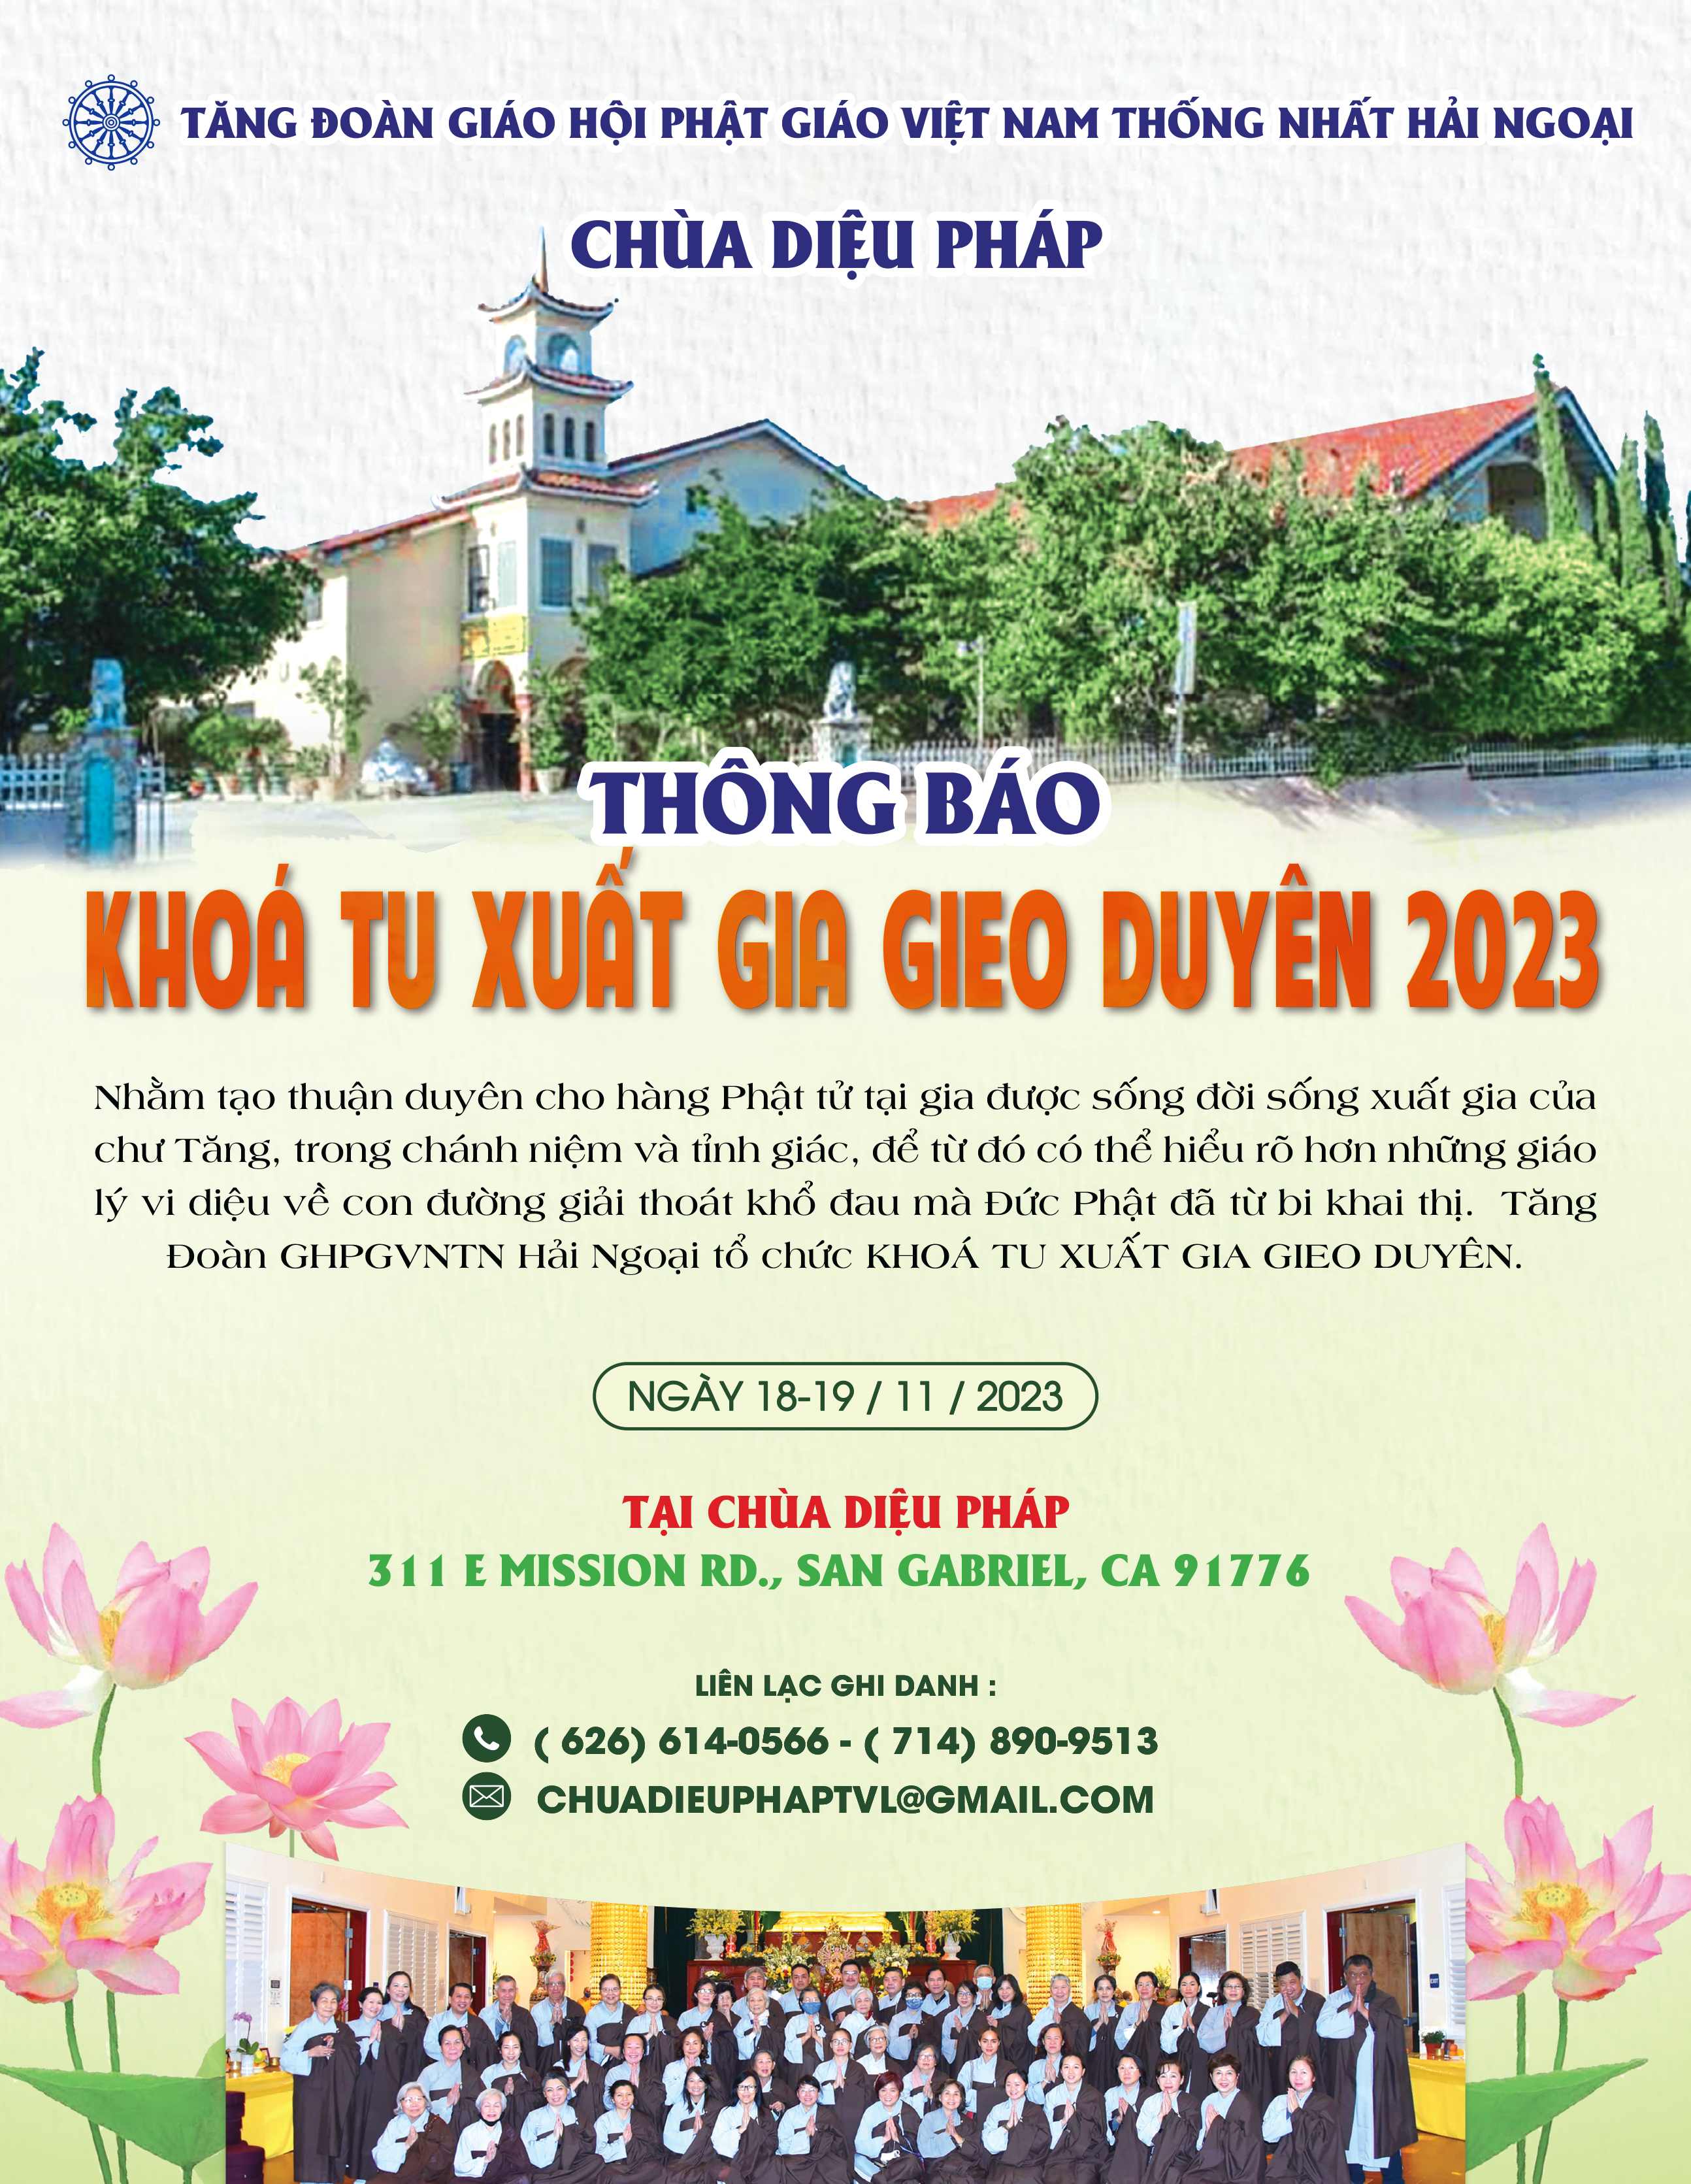 chuong-trinh-xuat-gia-gieo-duyen-2023-3